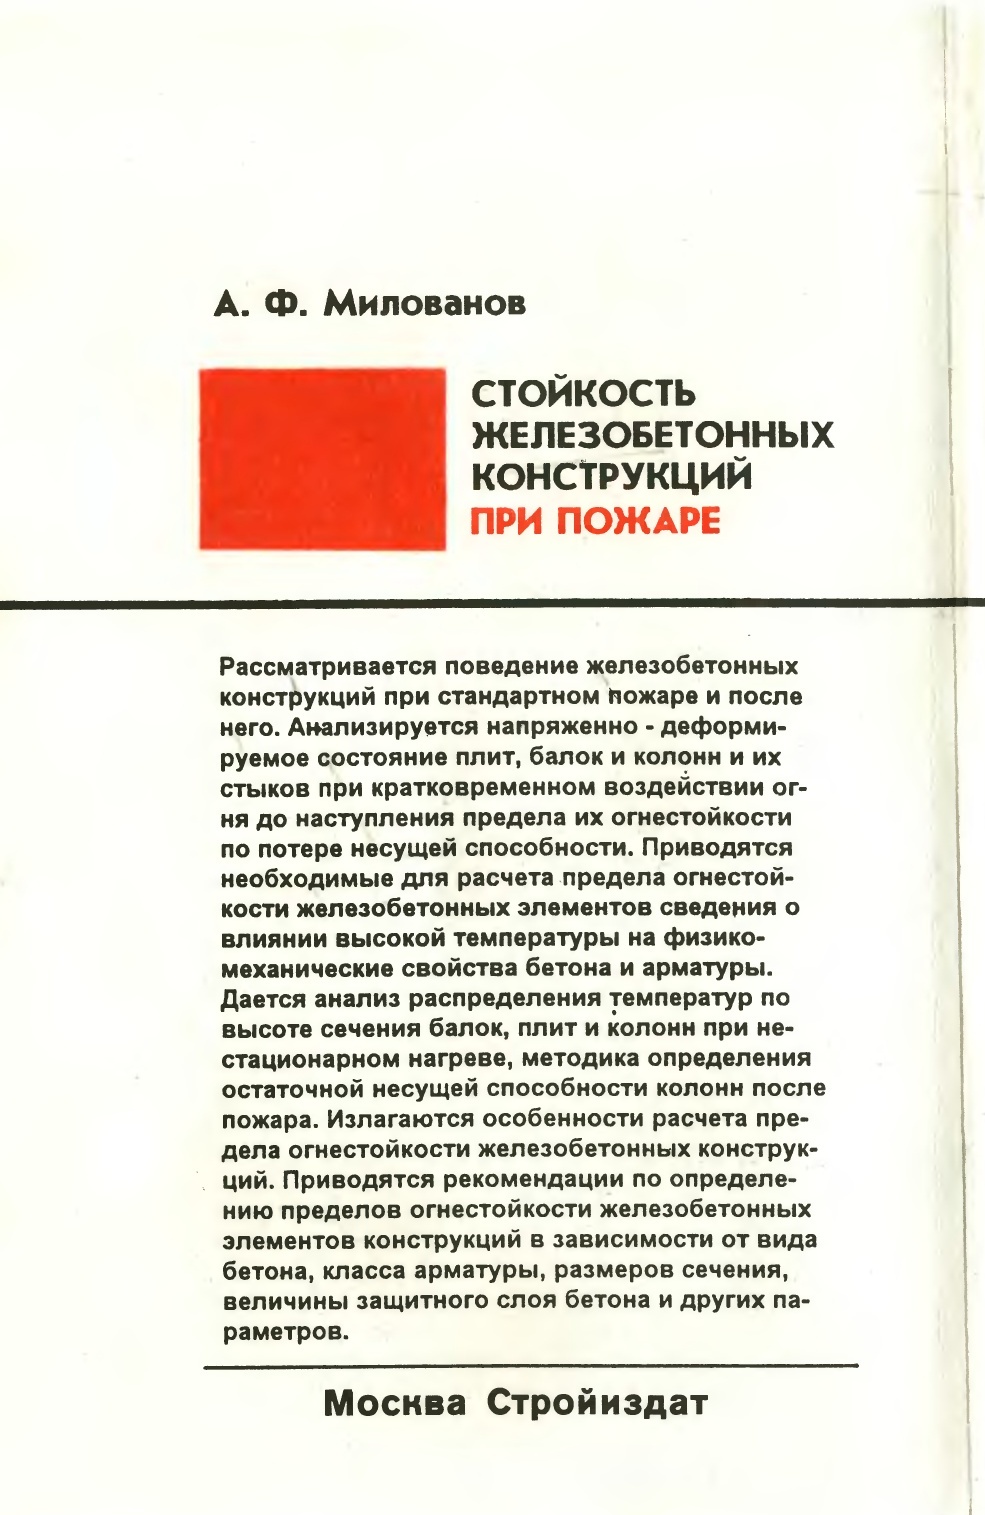 Стойкость железобетонных конструкций при пожаре / А. Ф. Милованов. — Москва : Стройиздат, 1998